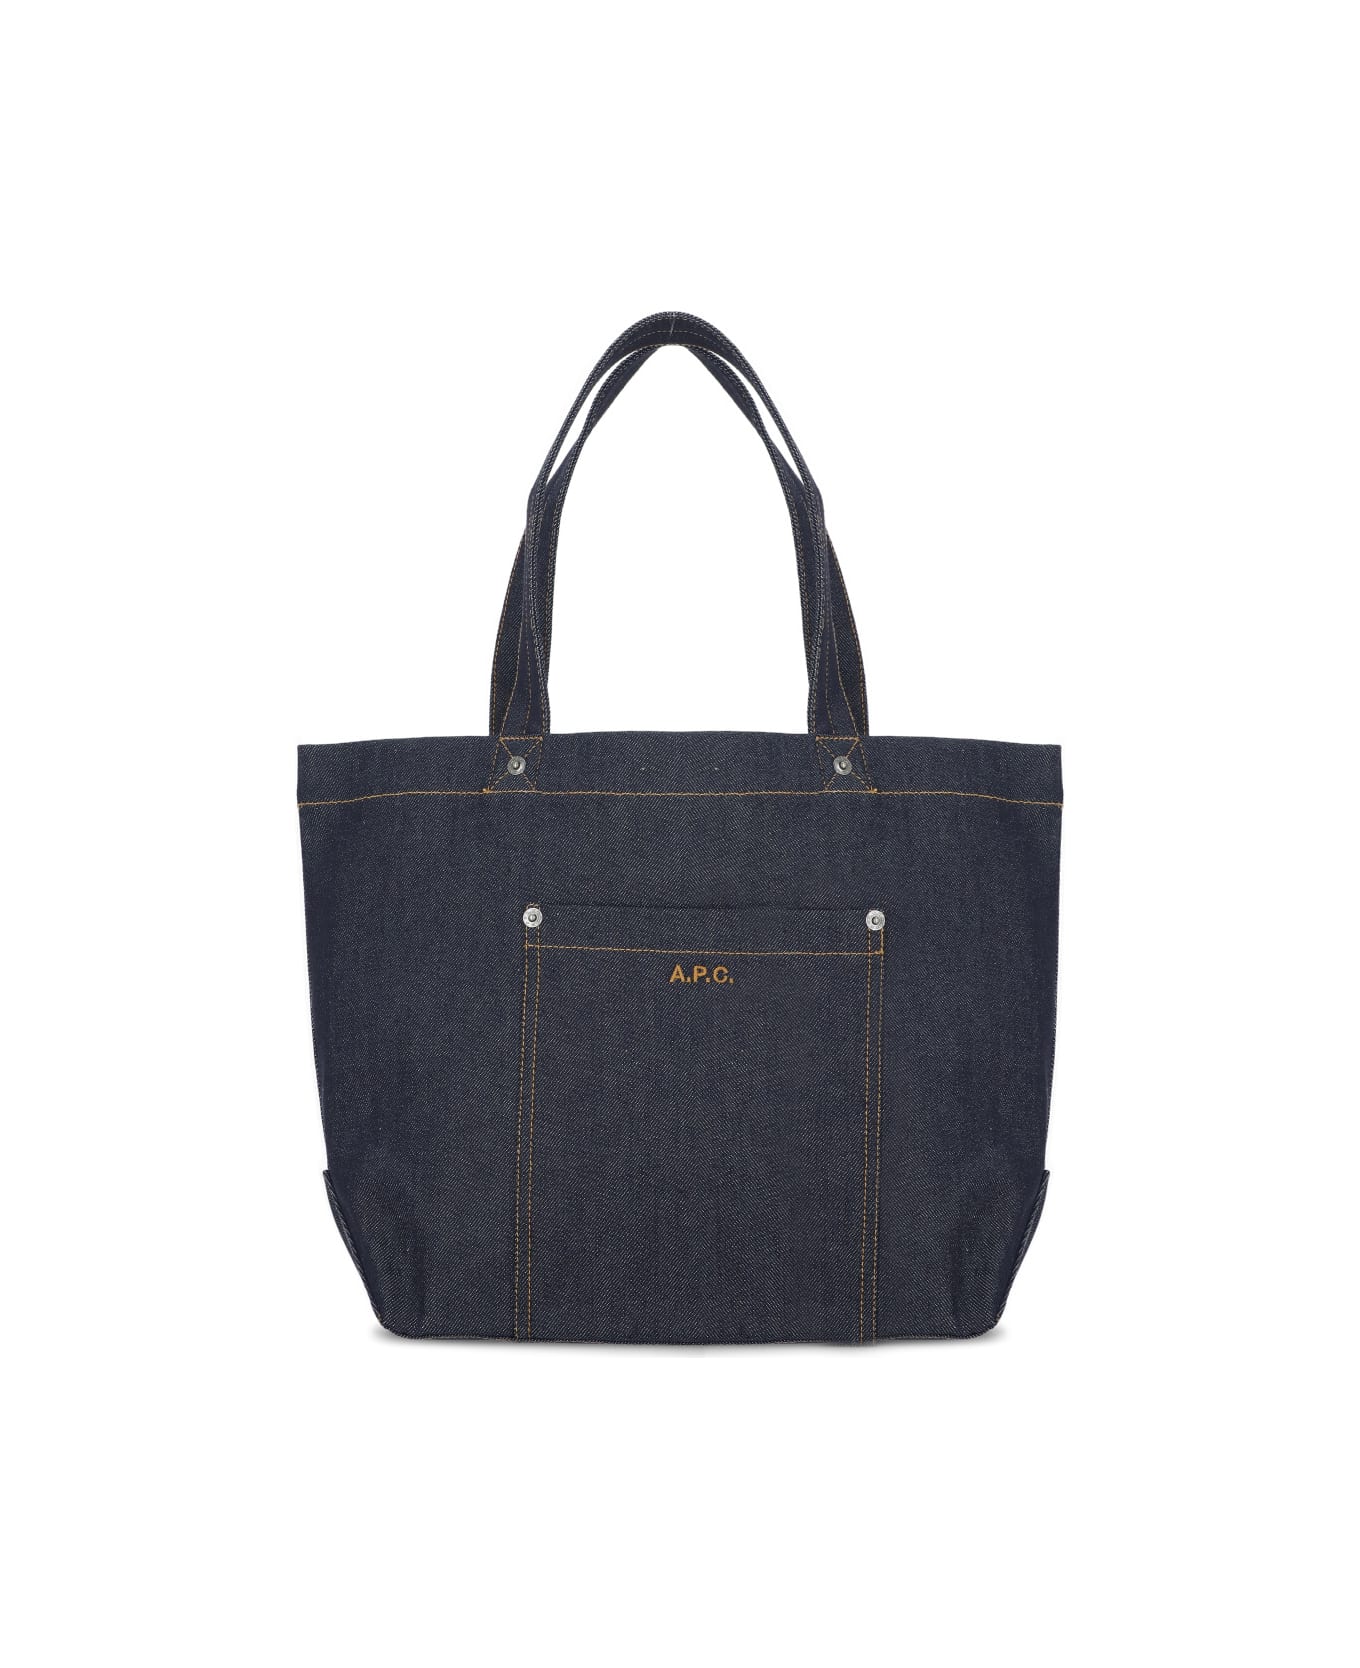 A.P.C. Thiais Shopping Bag - Blue